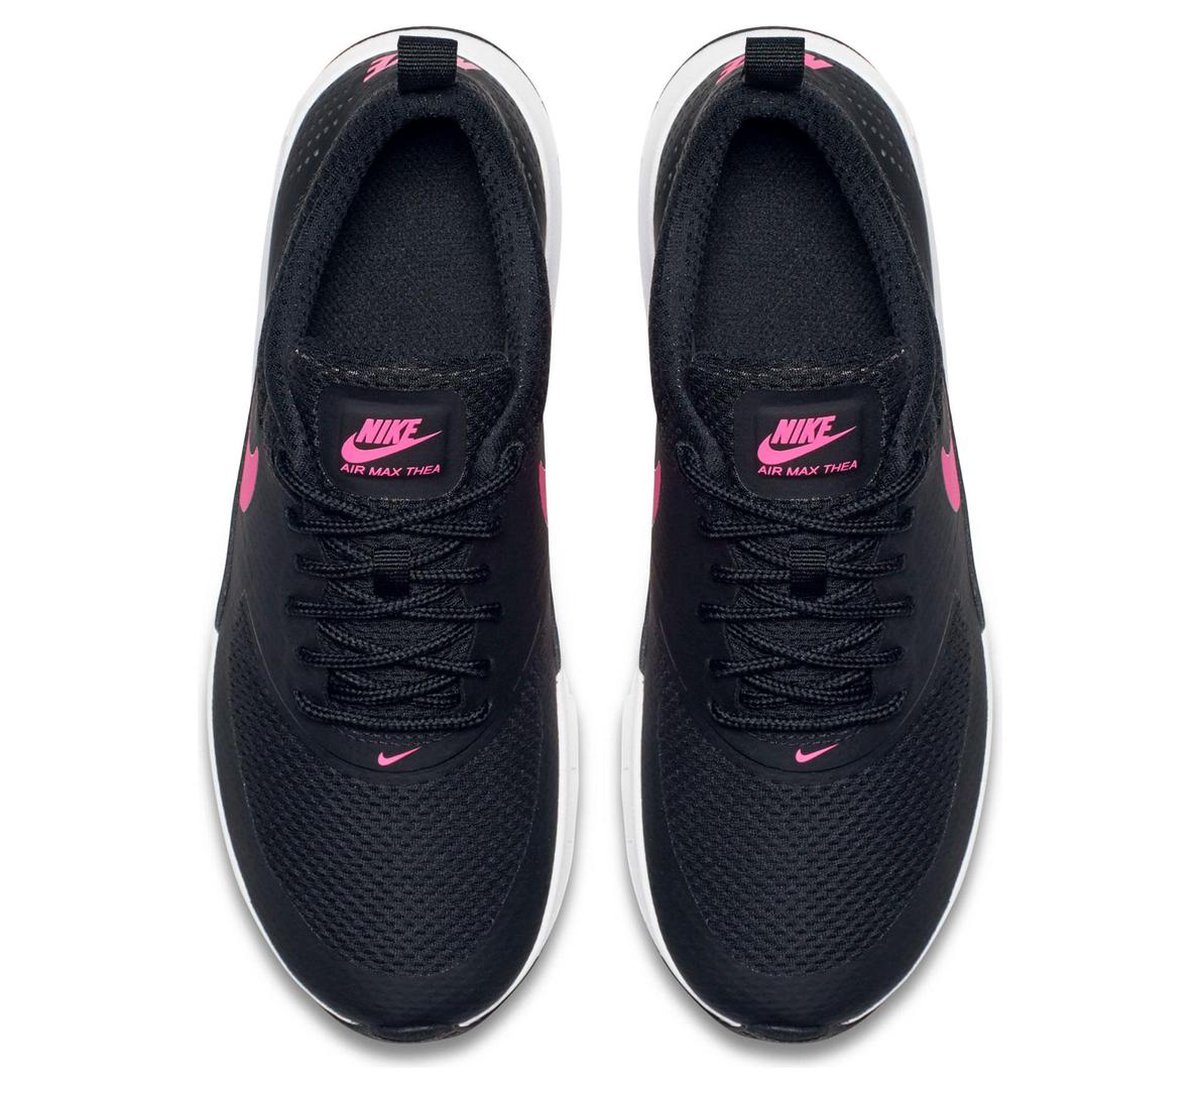 bol.com | Nike Air Max Thea Sneakers Kinderen - zwart/roze